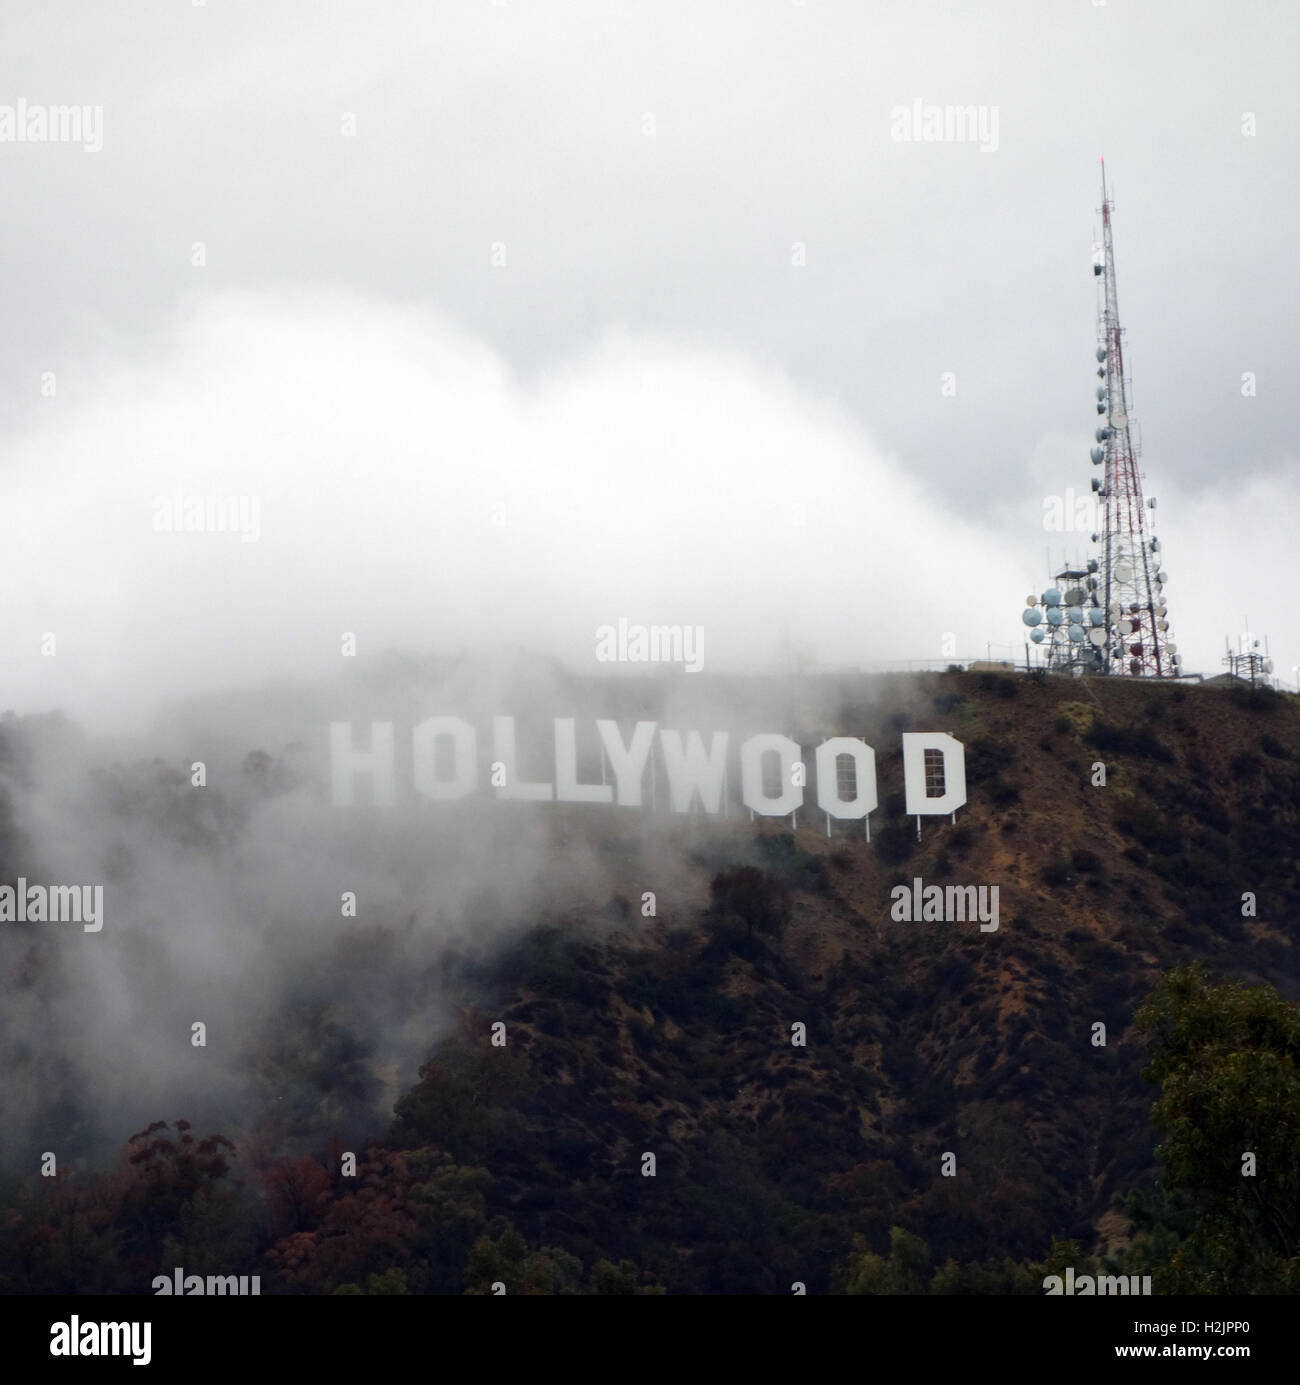 Hollywood-Schild verdeckt durch Nebel Stockfoto